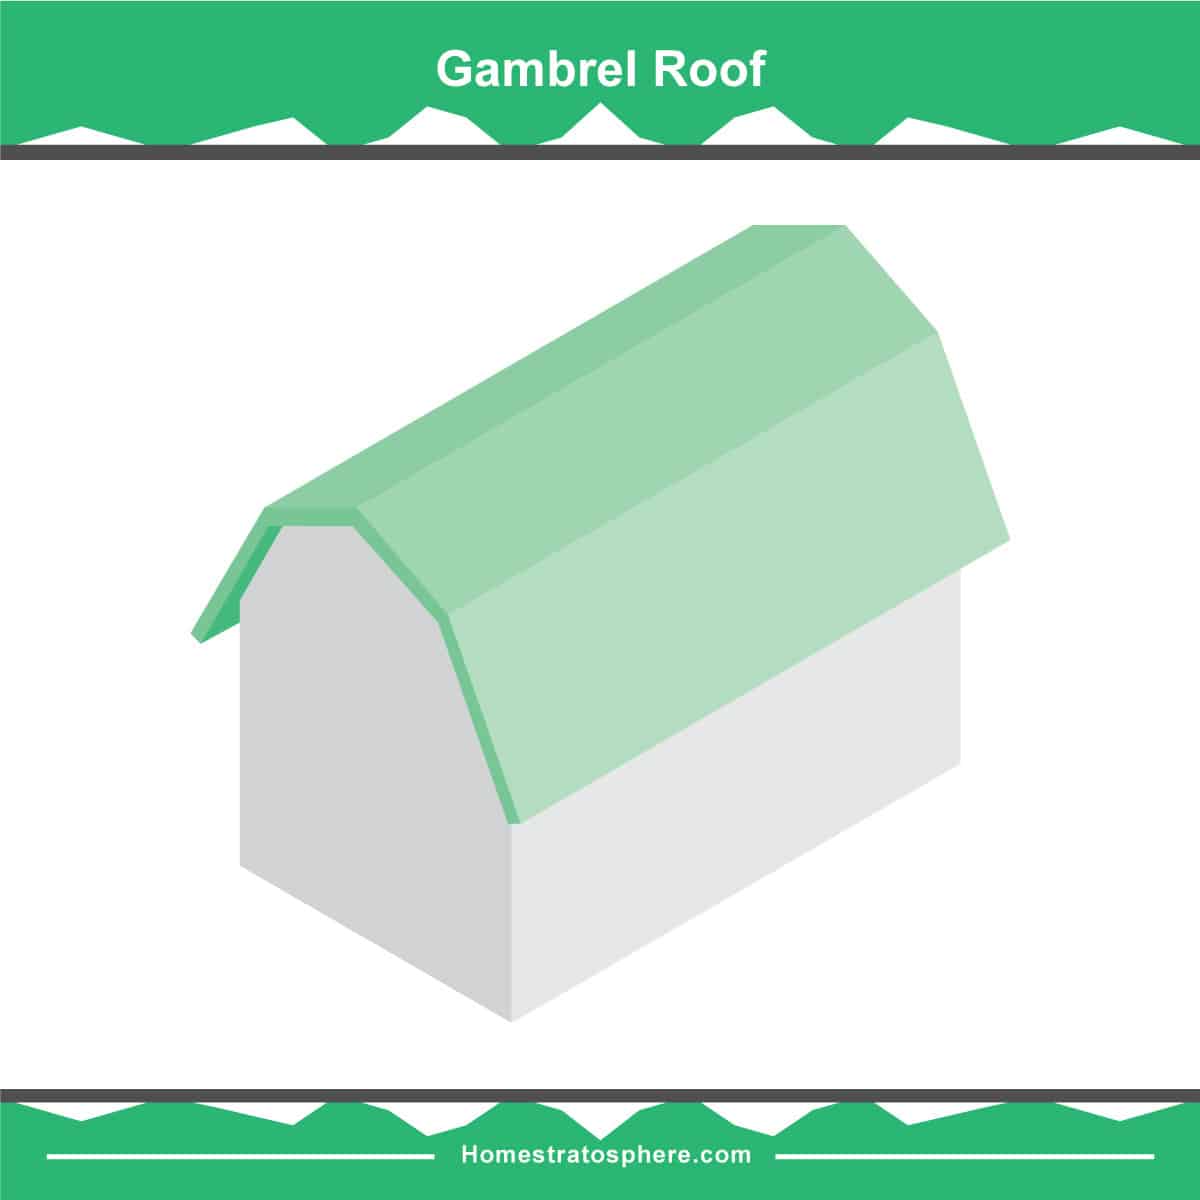 Gambrel屋顶图